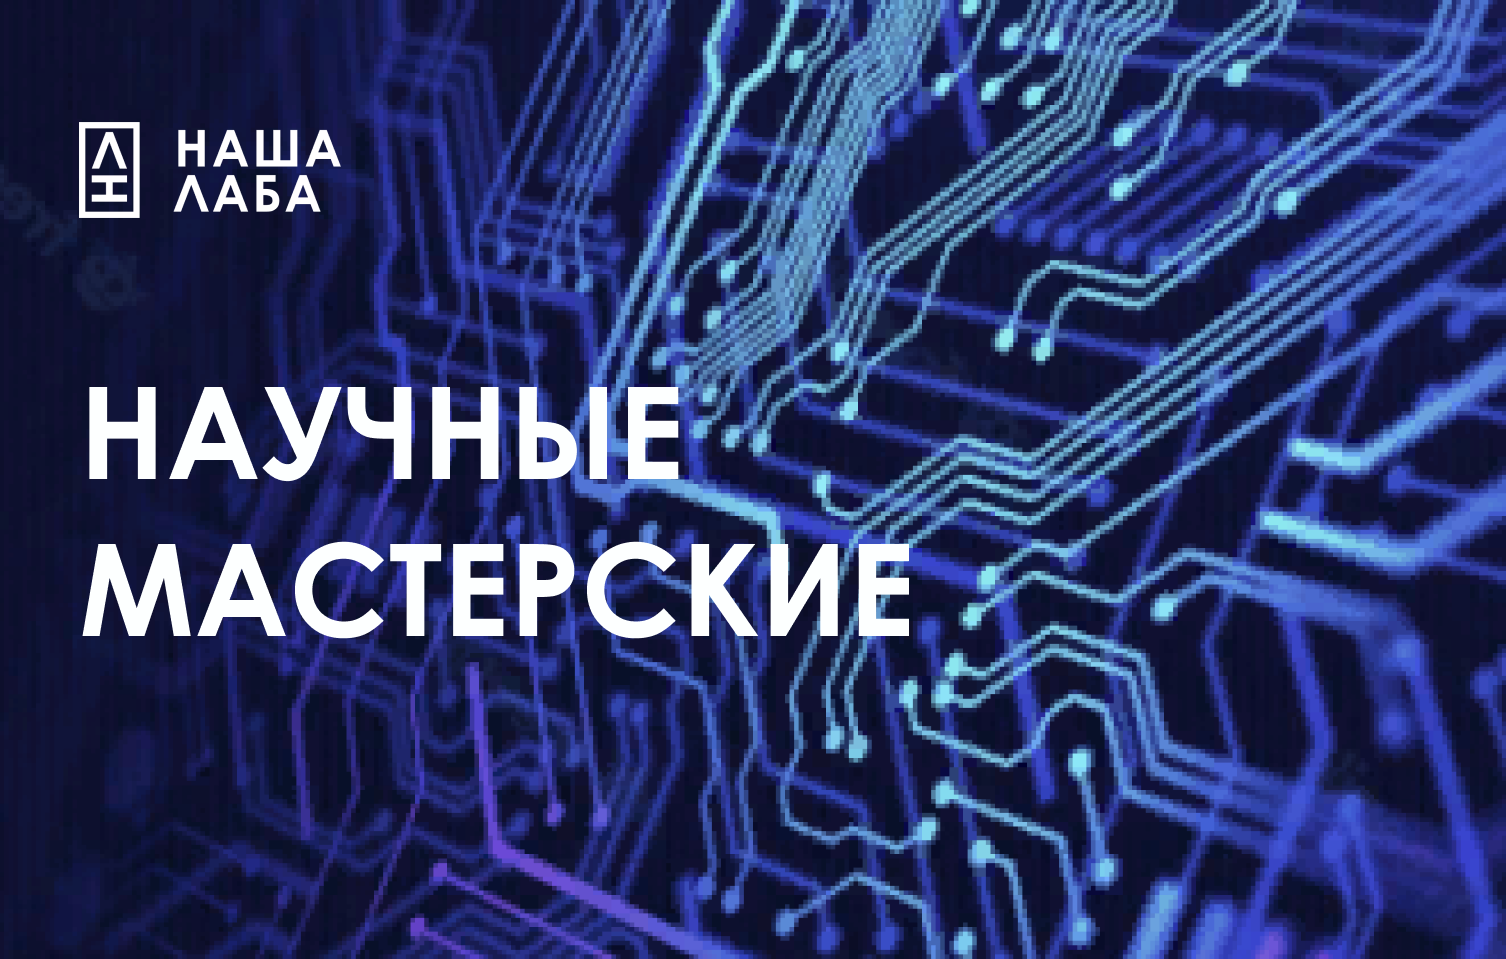 Портал «НАША ЛАБА» запускает конкурс на включение во всероссийскую карту ремонтных и сервисных организаций – «Научные мастерские»